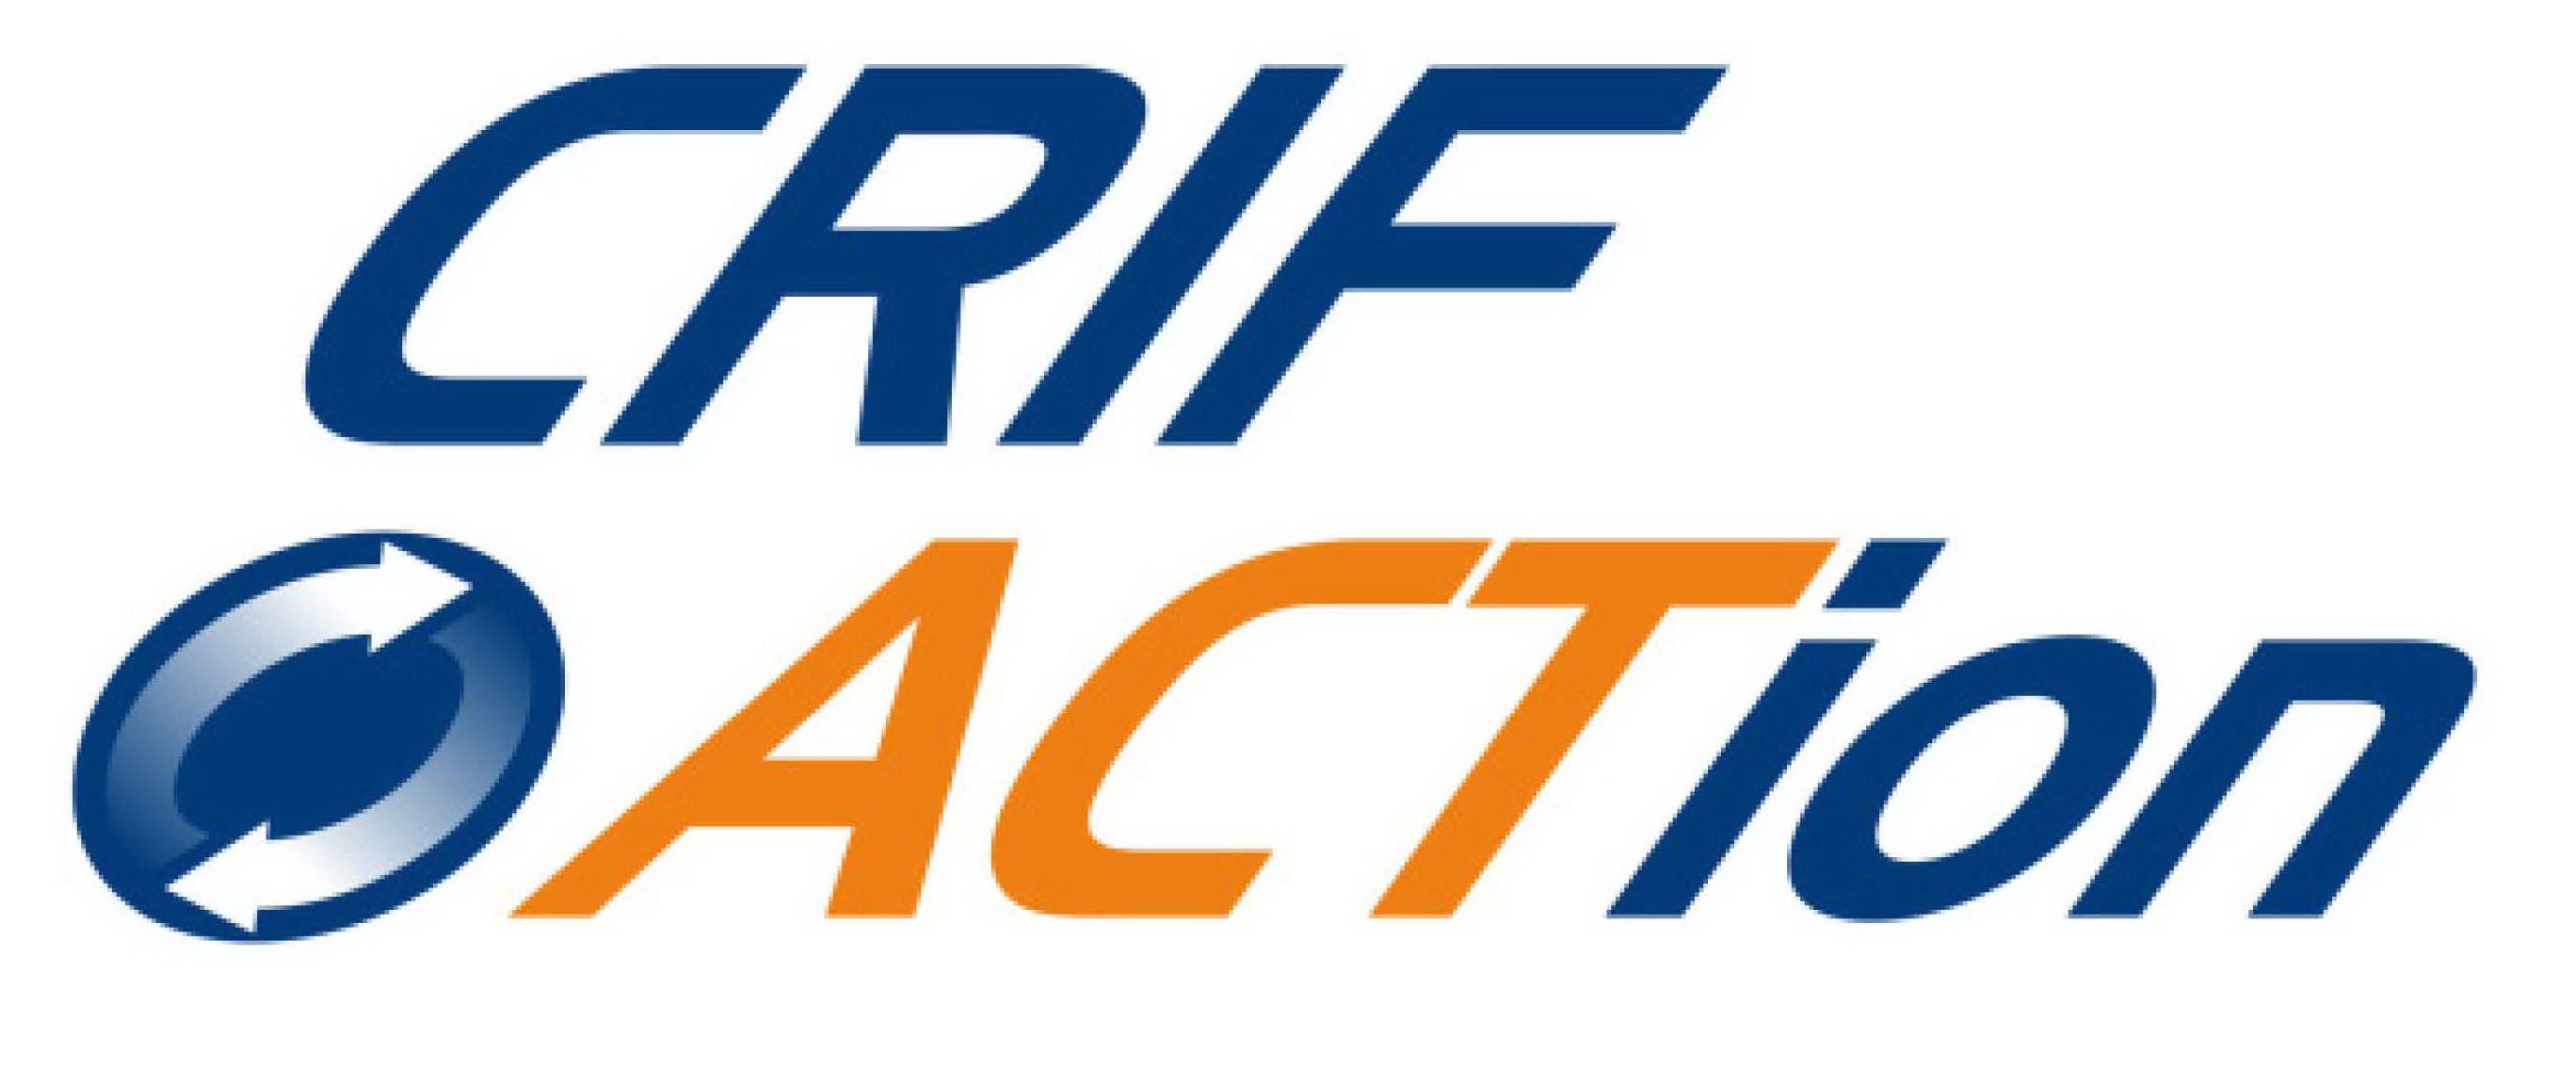 Trademark Logo CRIF ACTION